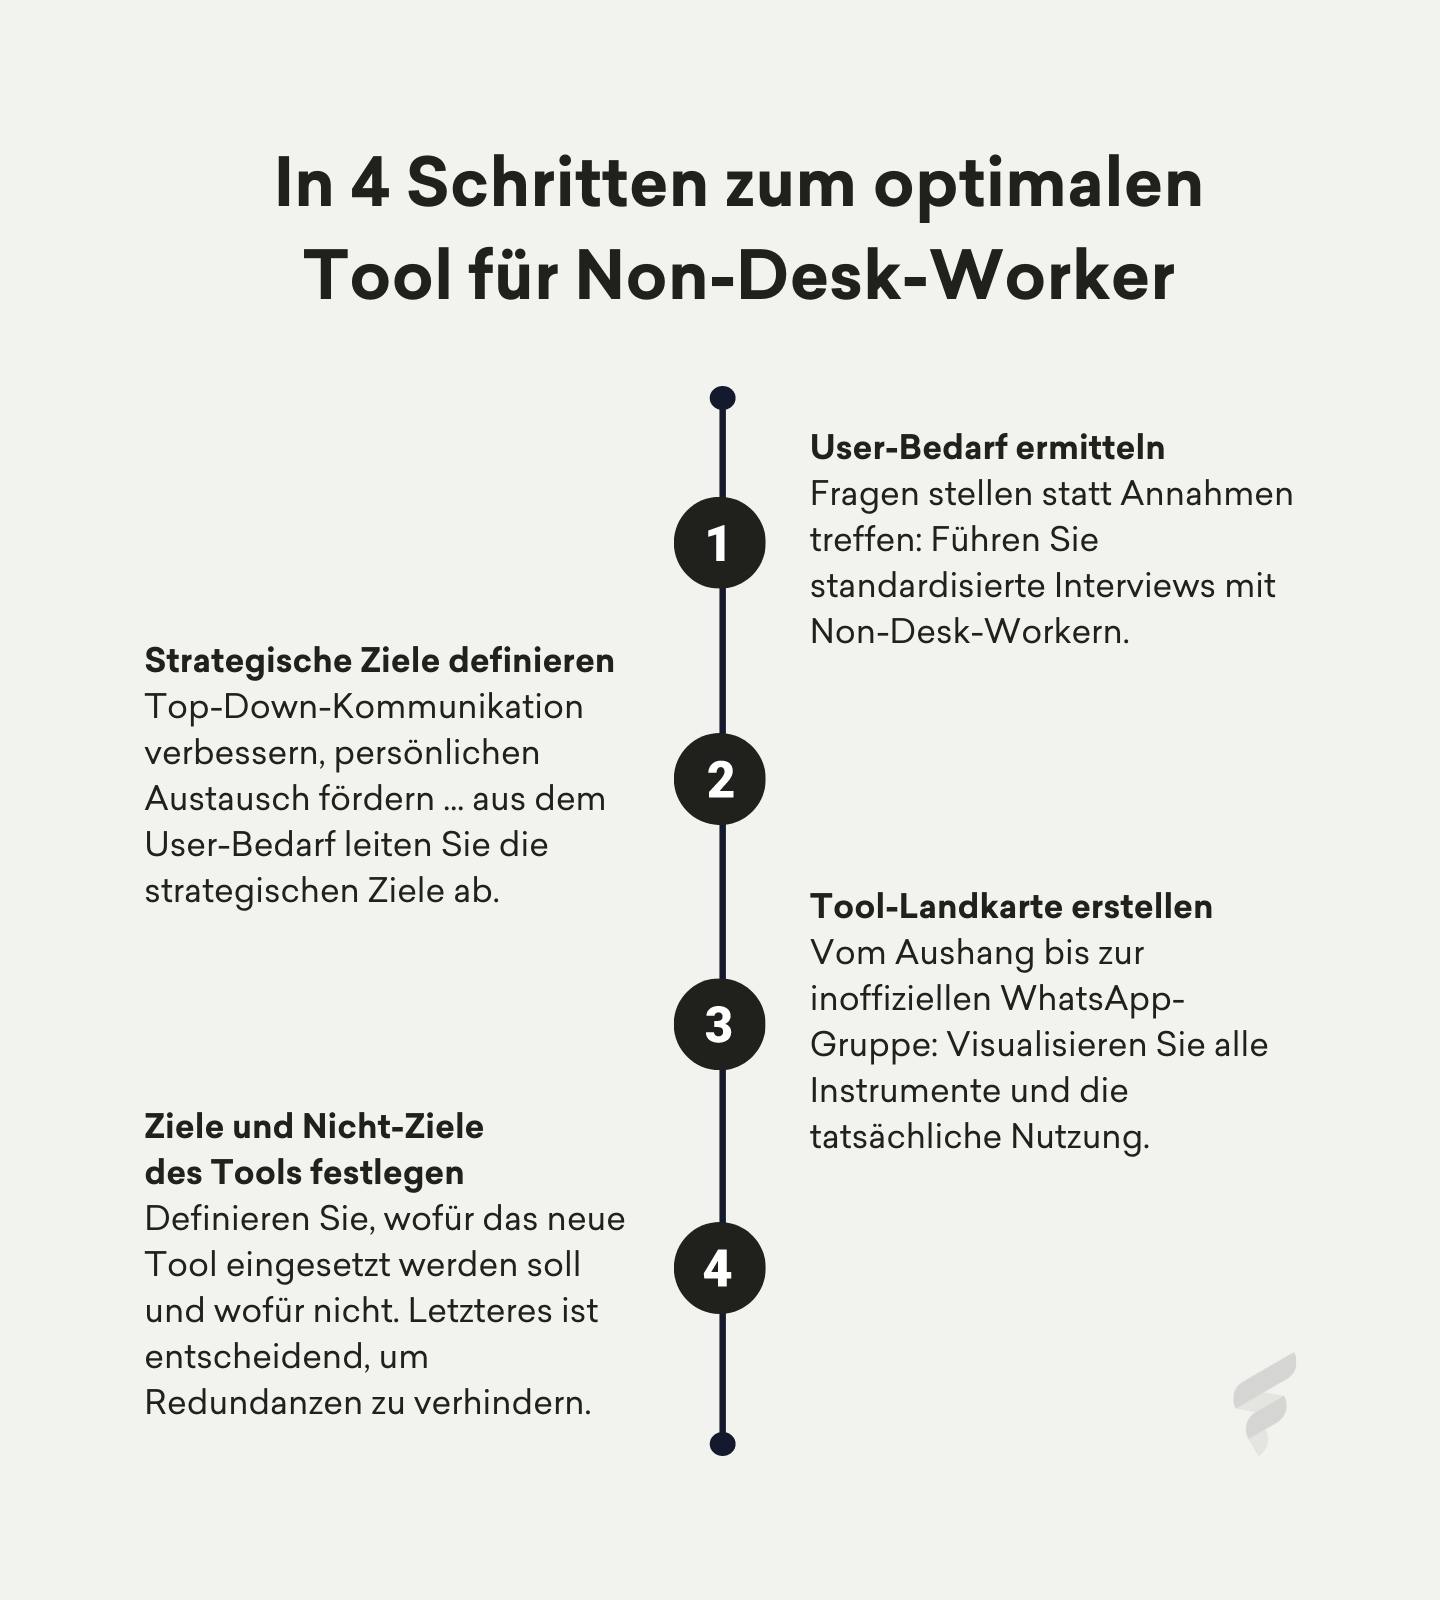 Infografik mit 4 Schritten für die Auswahl eines Tools für operative Beschäftigte